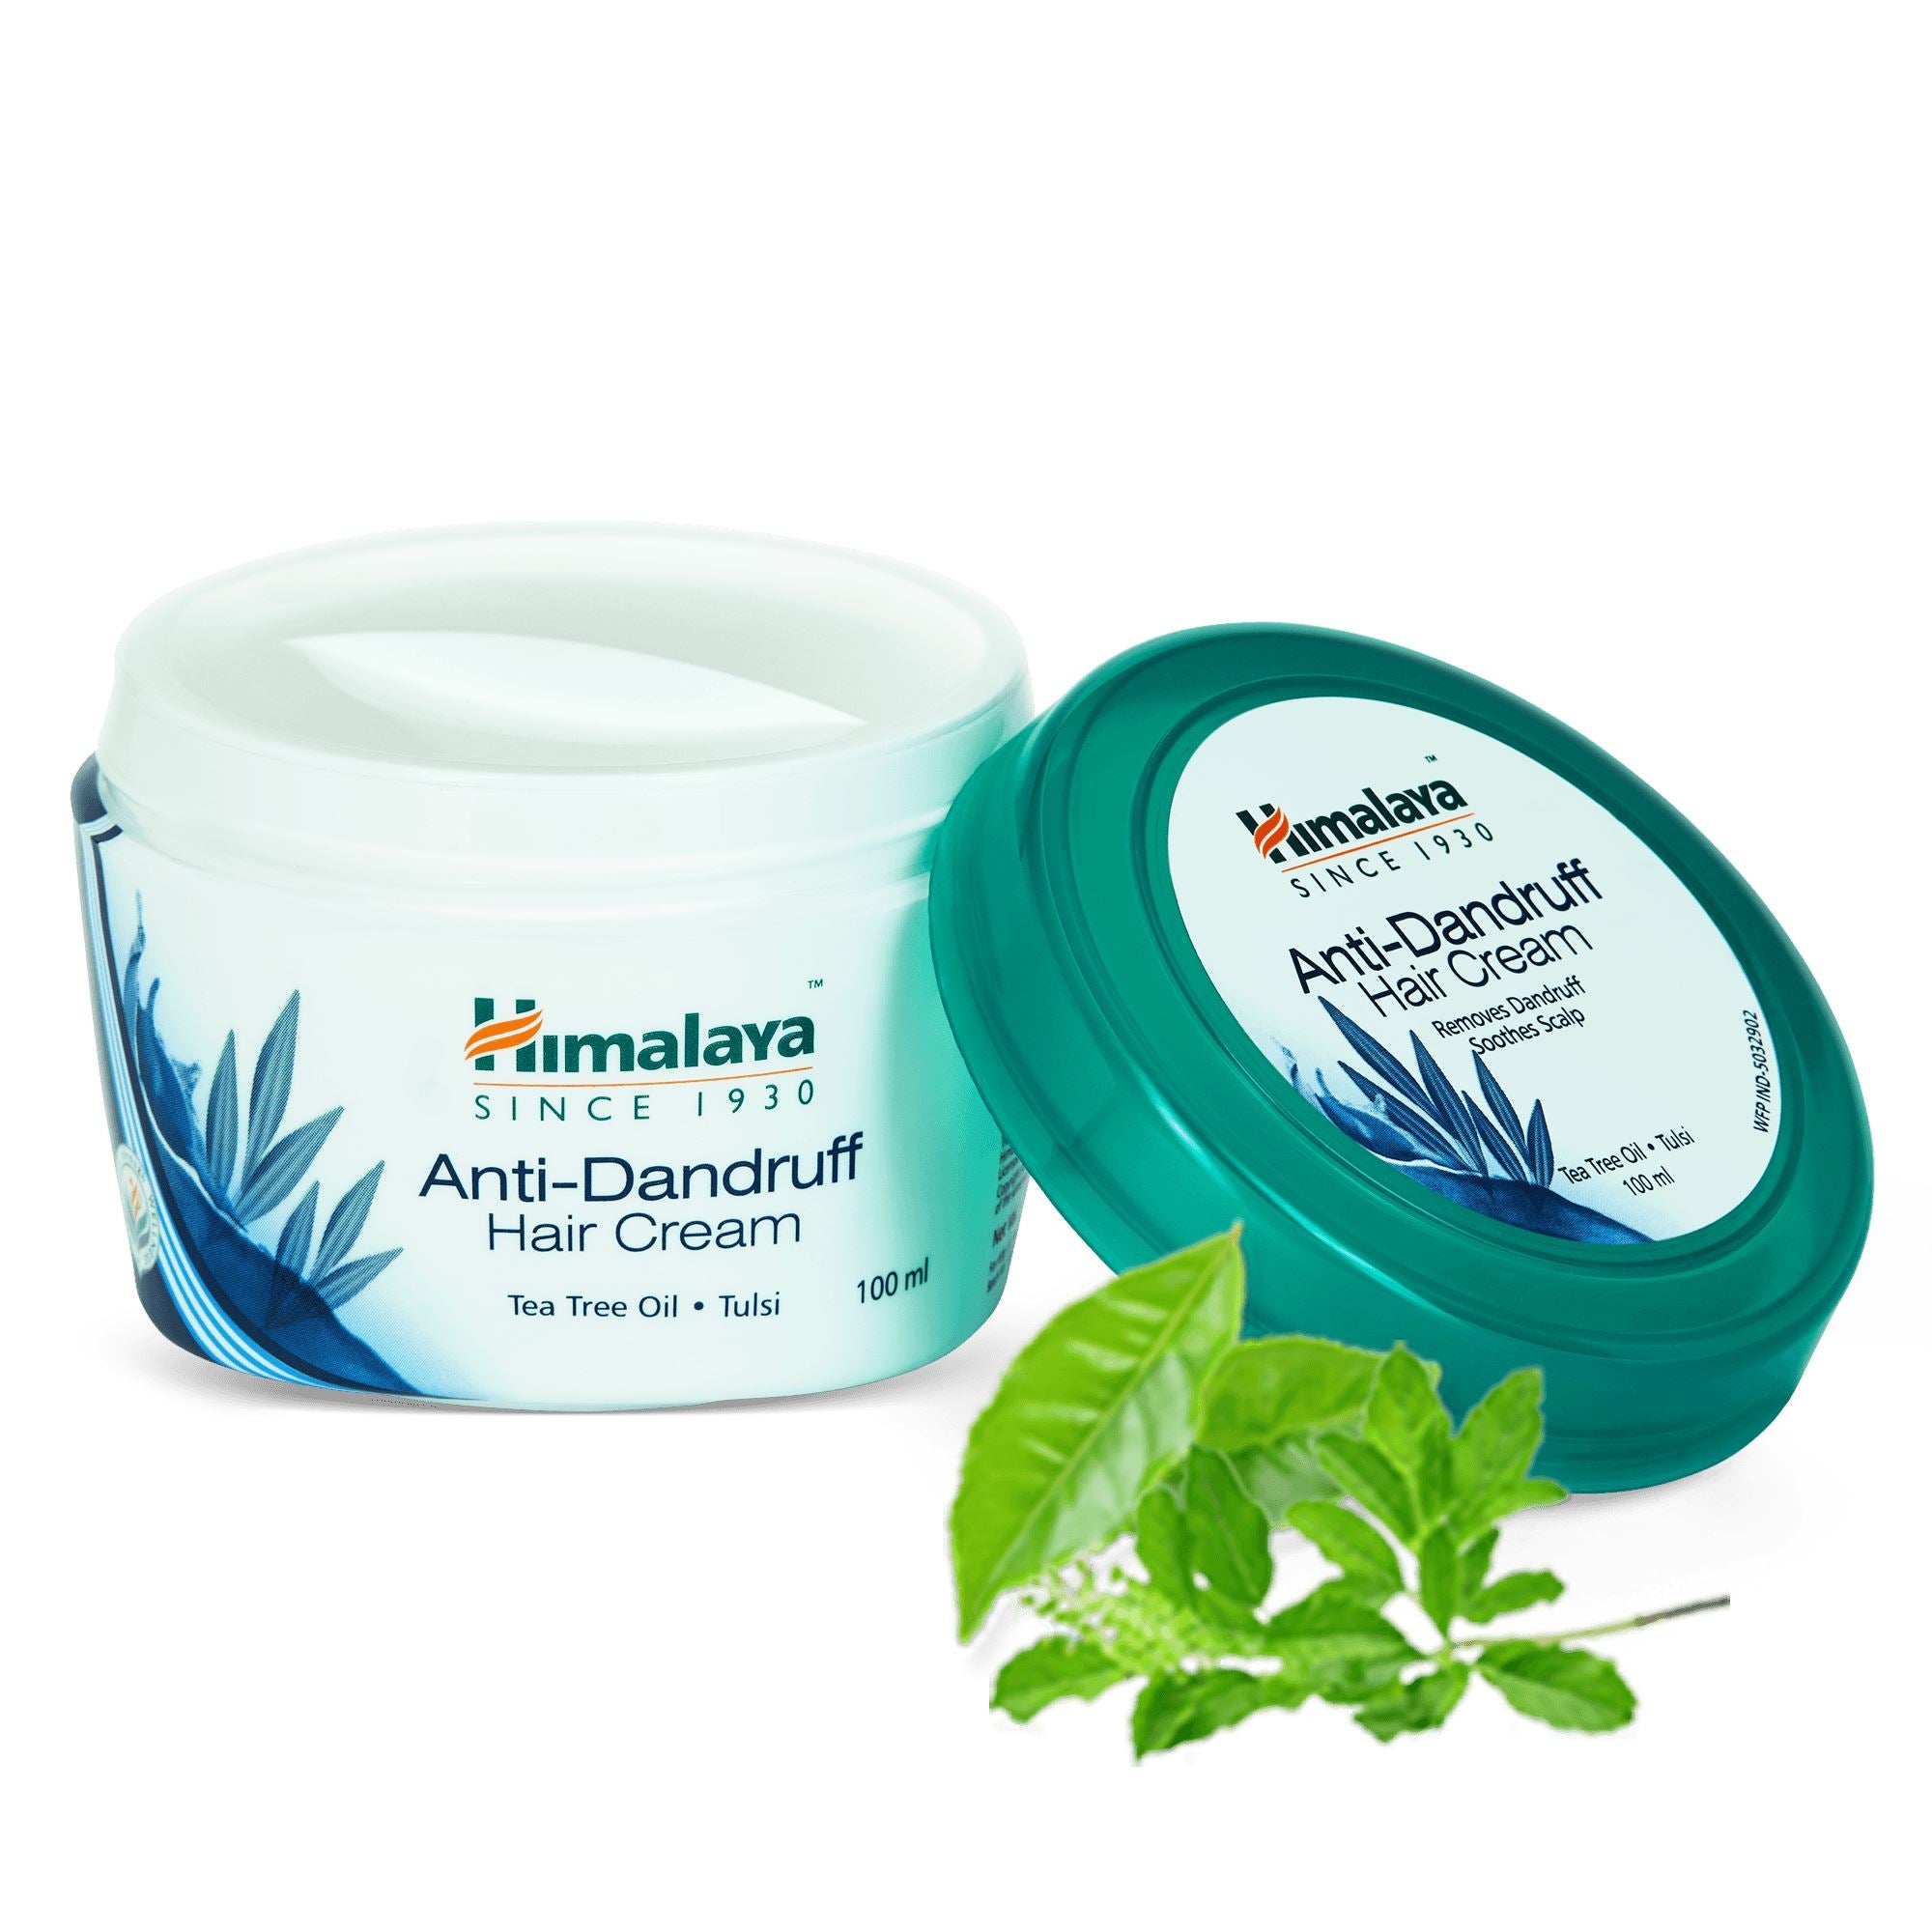 Himalaya Anti-Dandruff Hair Cream 100ml - Removes dandruff, nourishes scalp